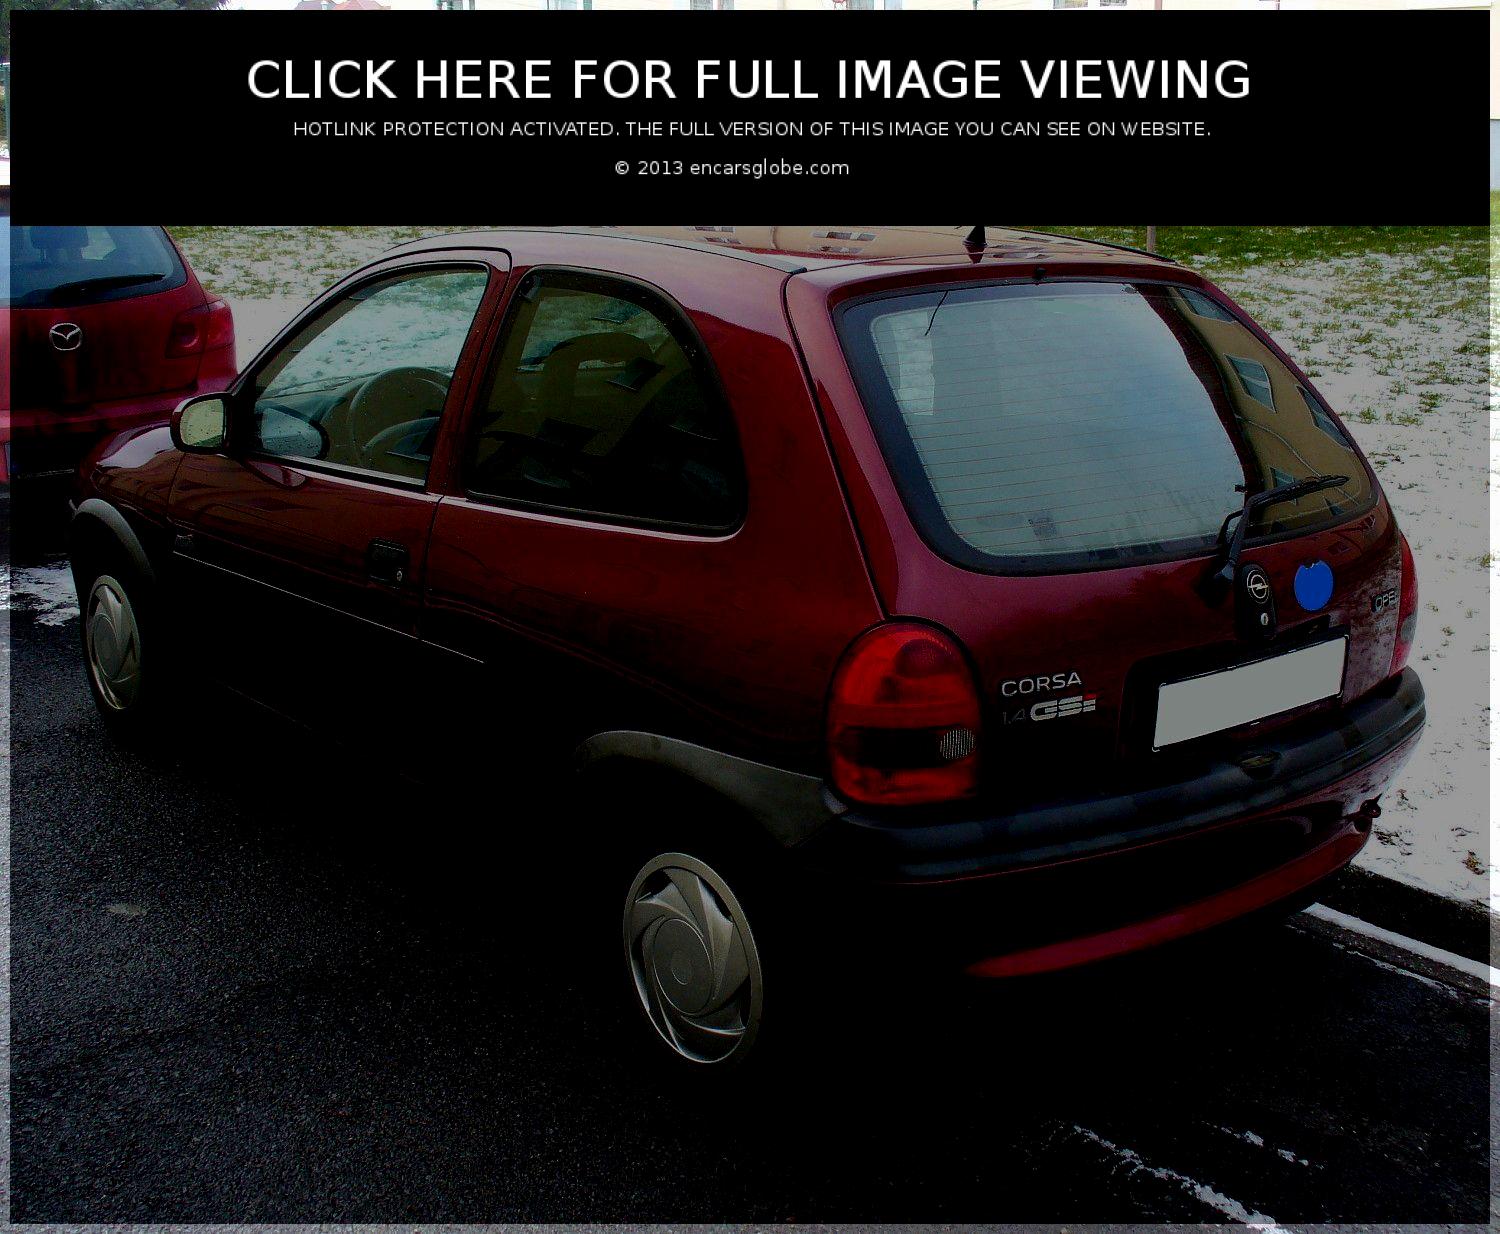 Opel Corsa Atlanta Image â„–: 02 image. Size: 1500 x 1234 px | 14883 views